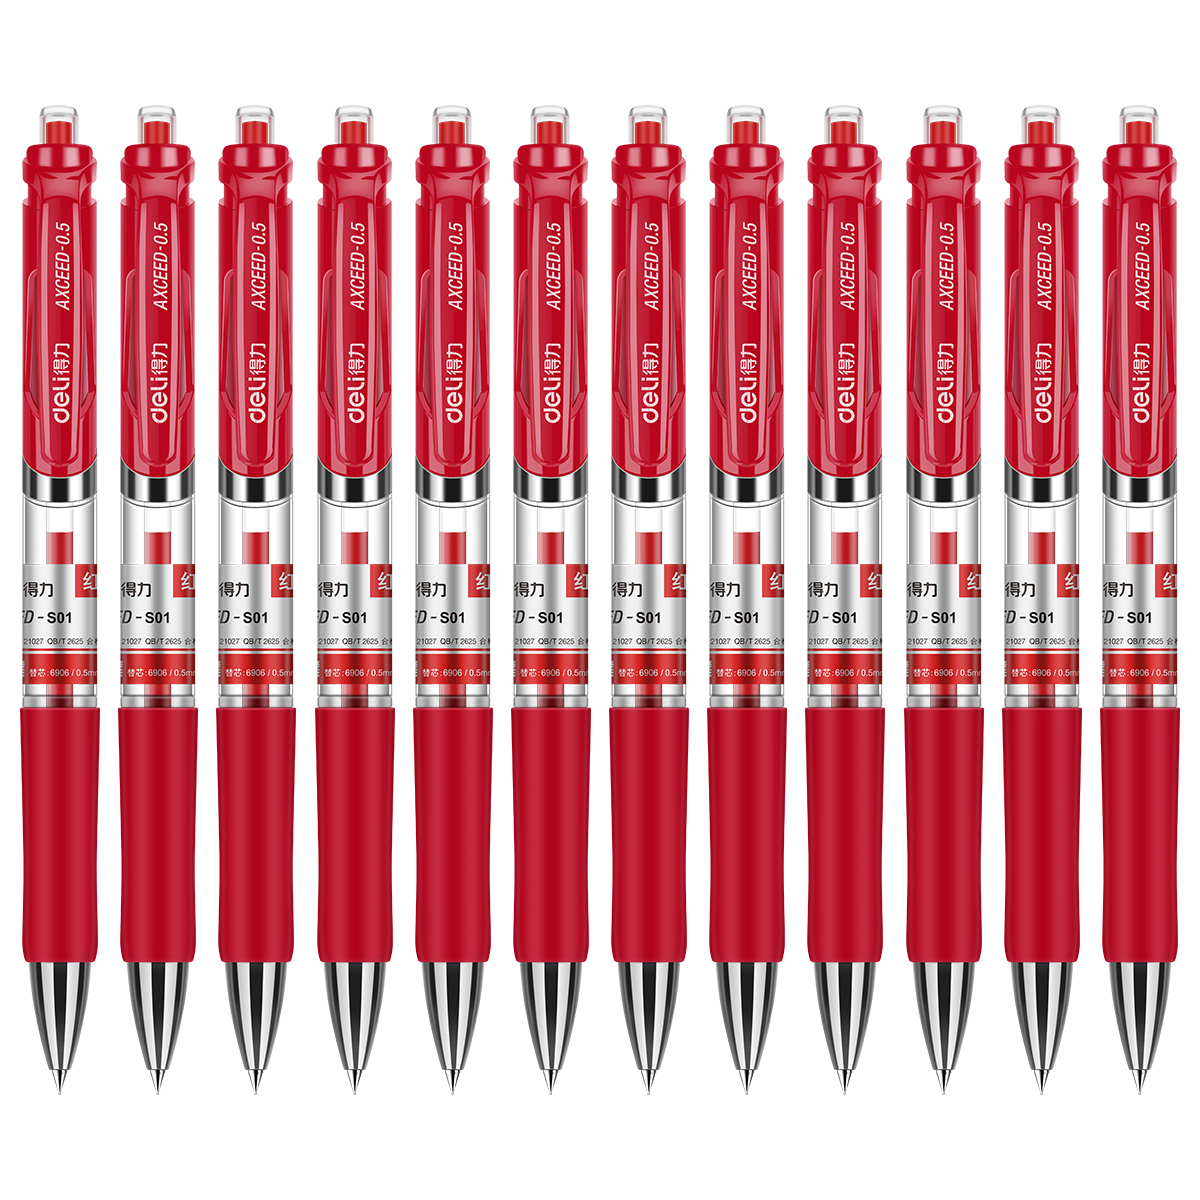 得力S28木本系列中性笔 0.5mm水笔/签字笔 黑色笔芯 12支/盒